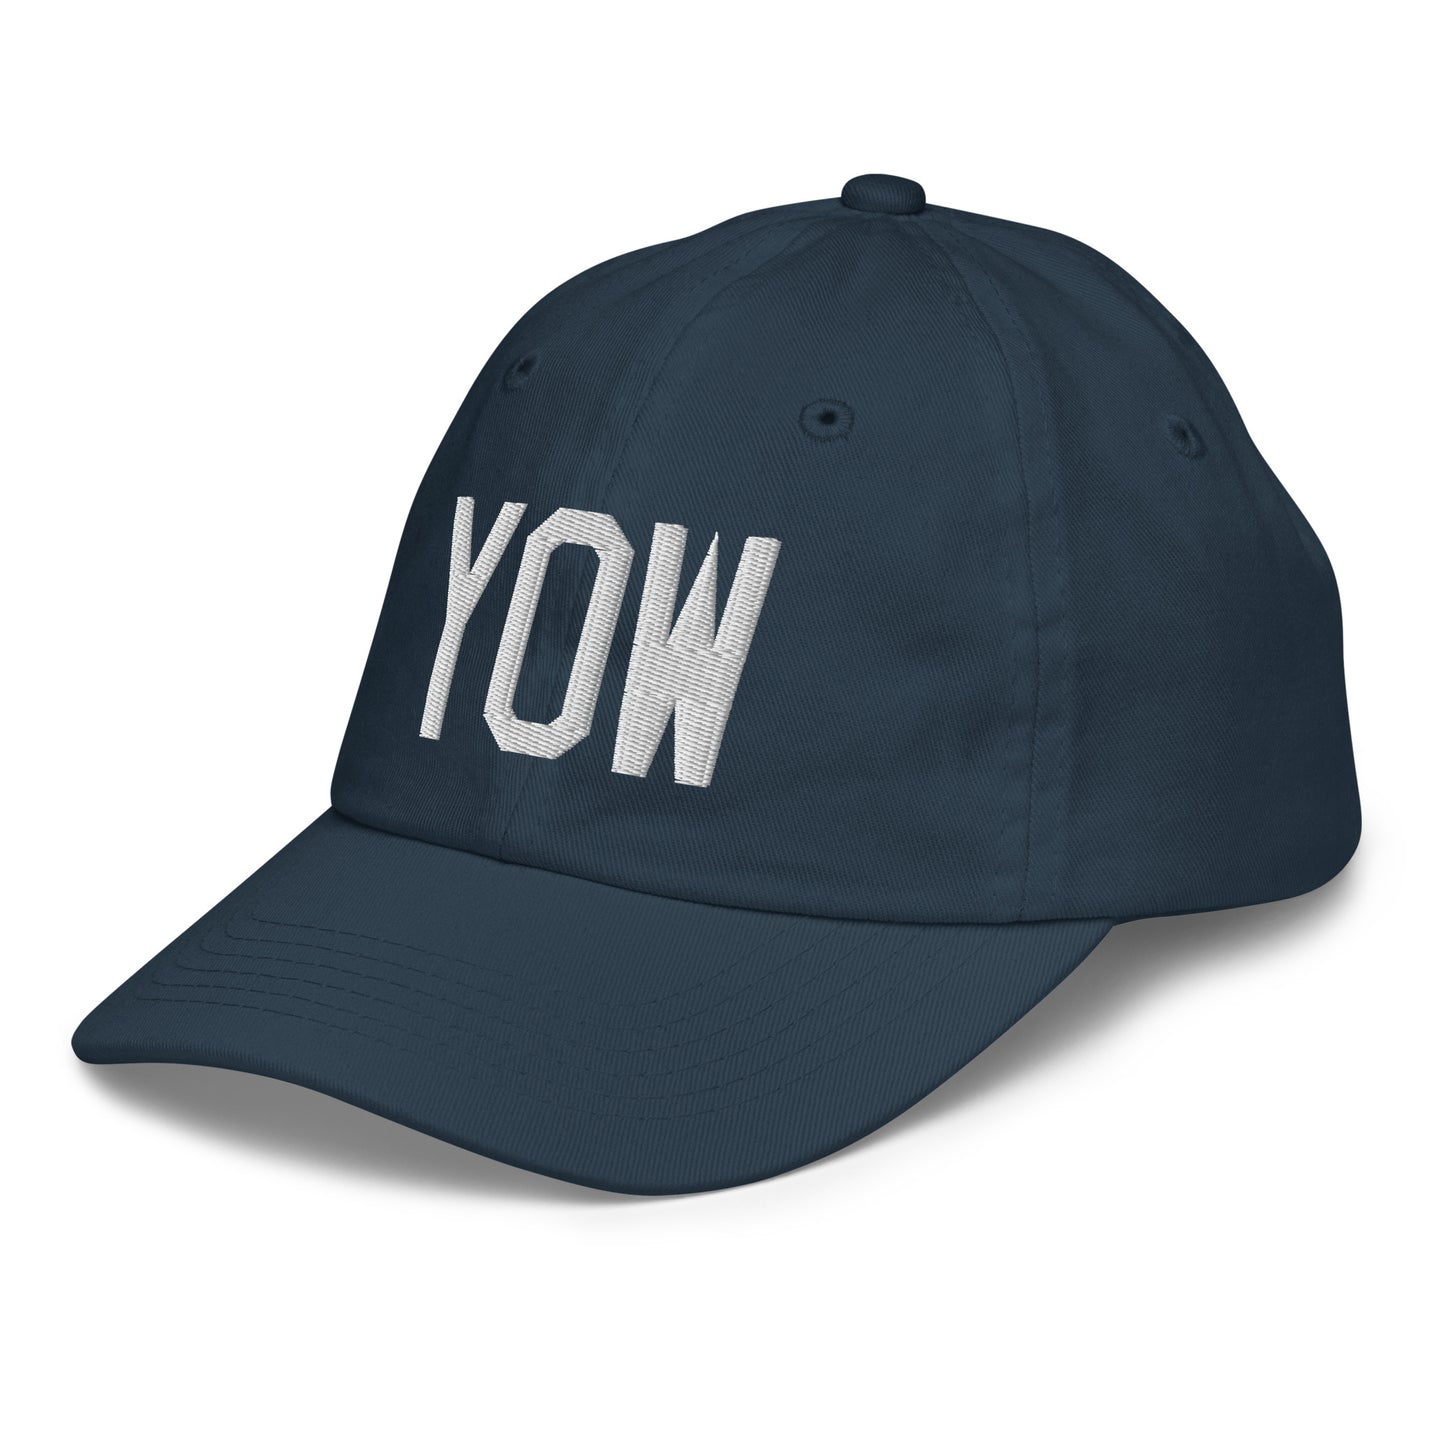 Airport Code Kid's Baseball Cap - White • YOW Ottawa • YHM Designs - Image 16